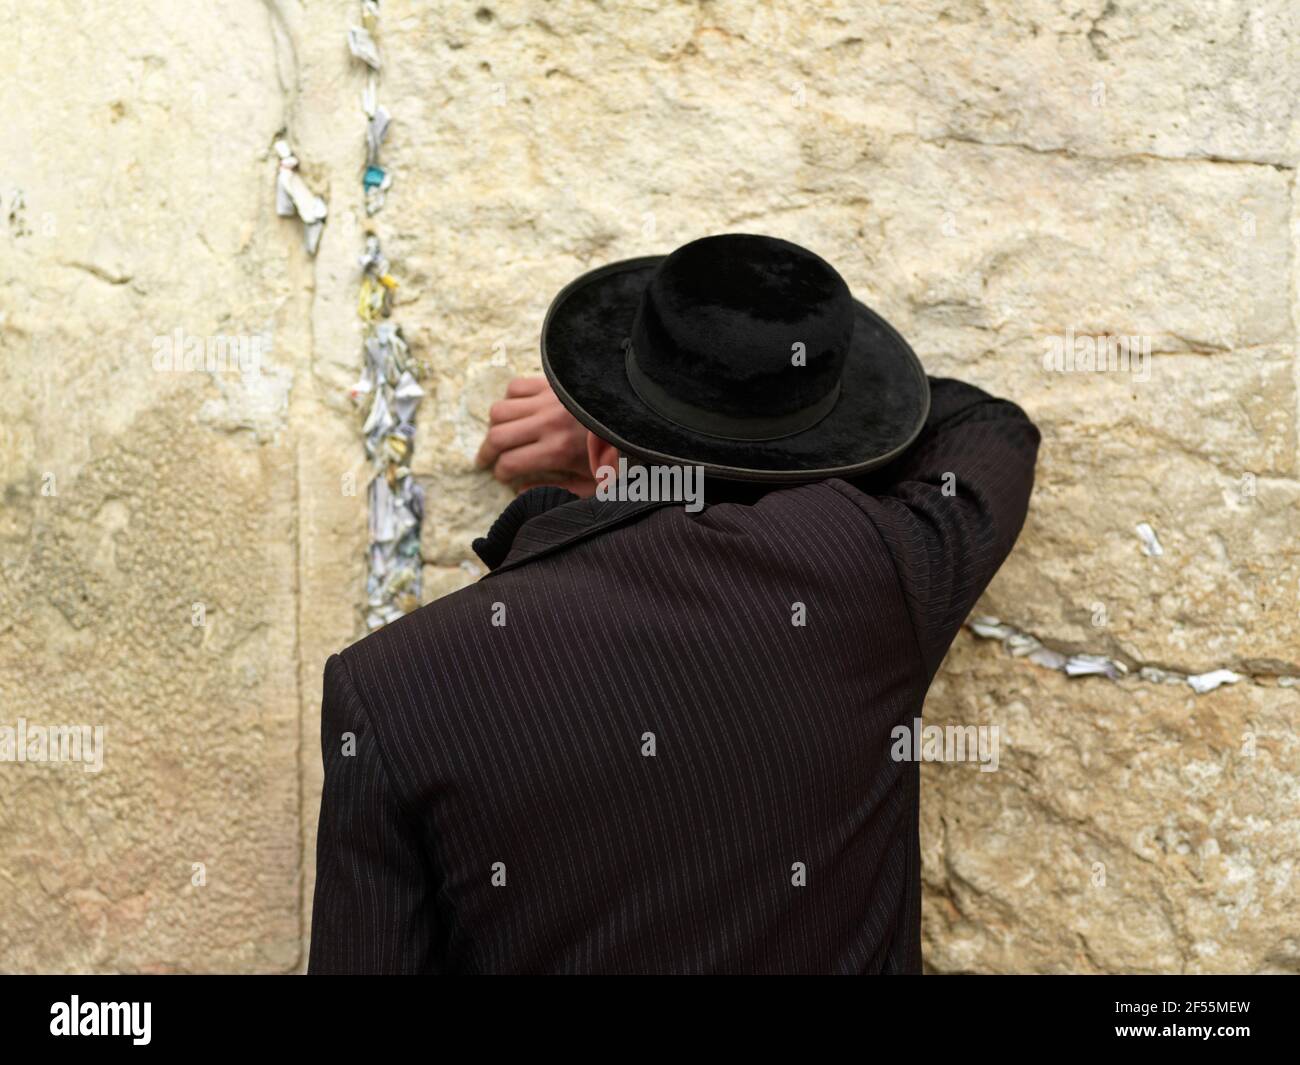 Israele Gerusalemme Muro Occidentale o Muro di Pianto con adoratore Foto Stock